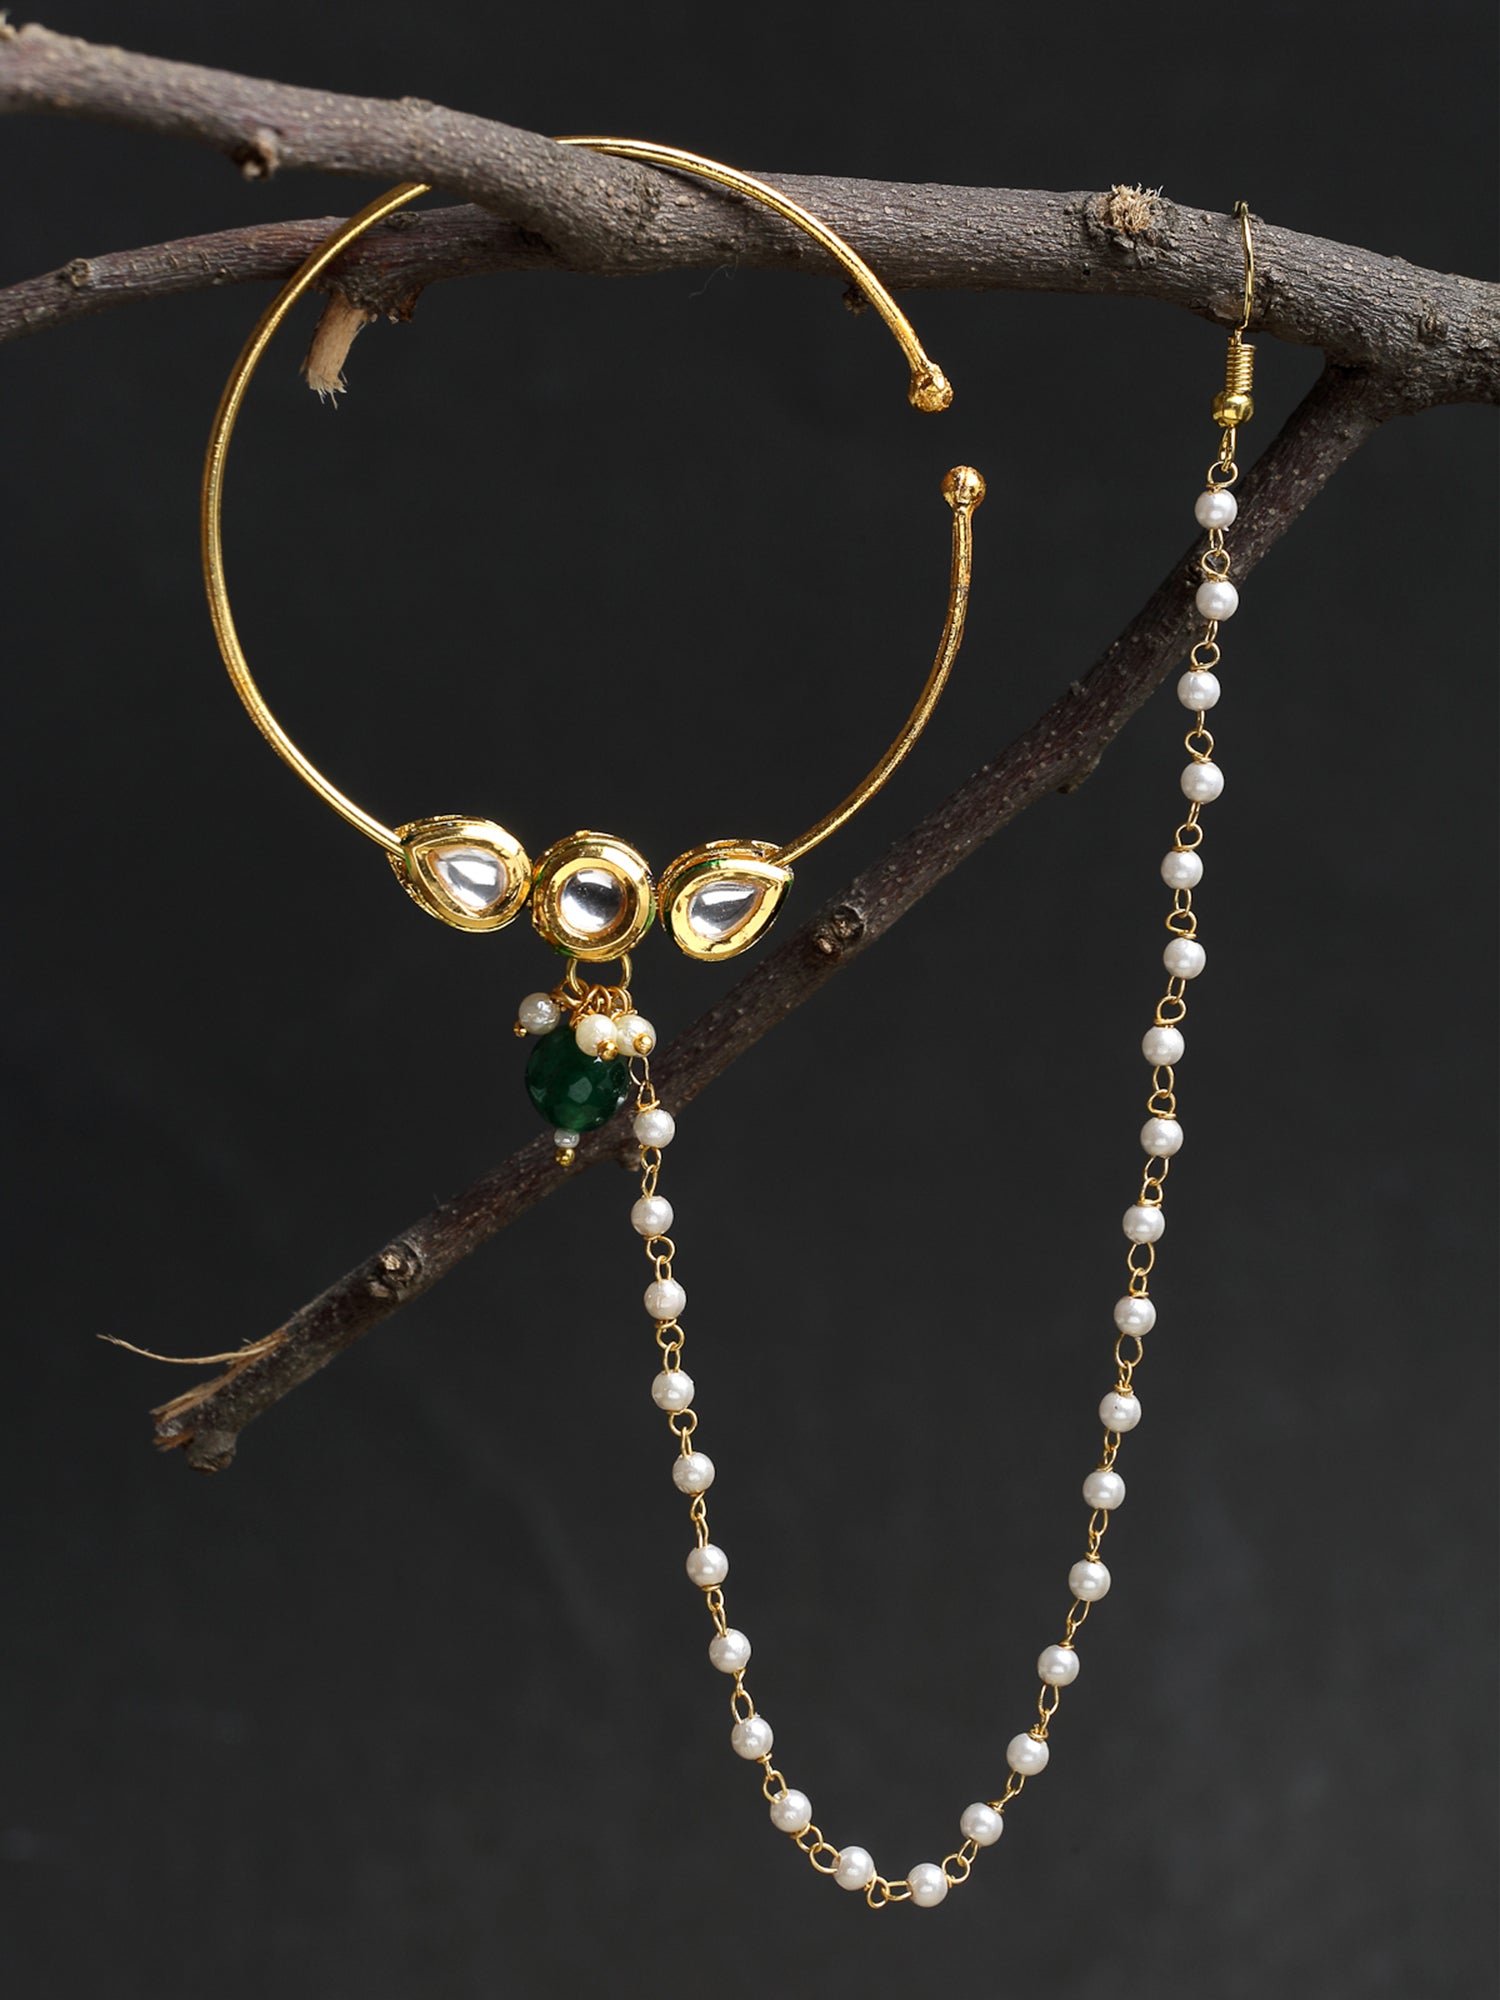 Bridal Kundan Nose Ring With Pearls By Ruby Raang